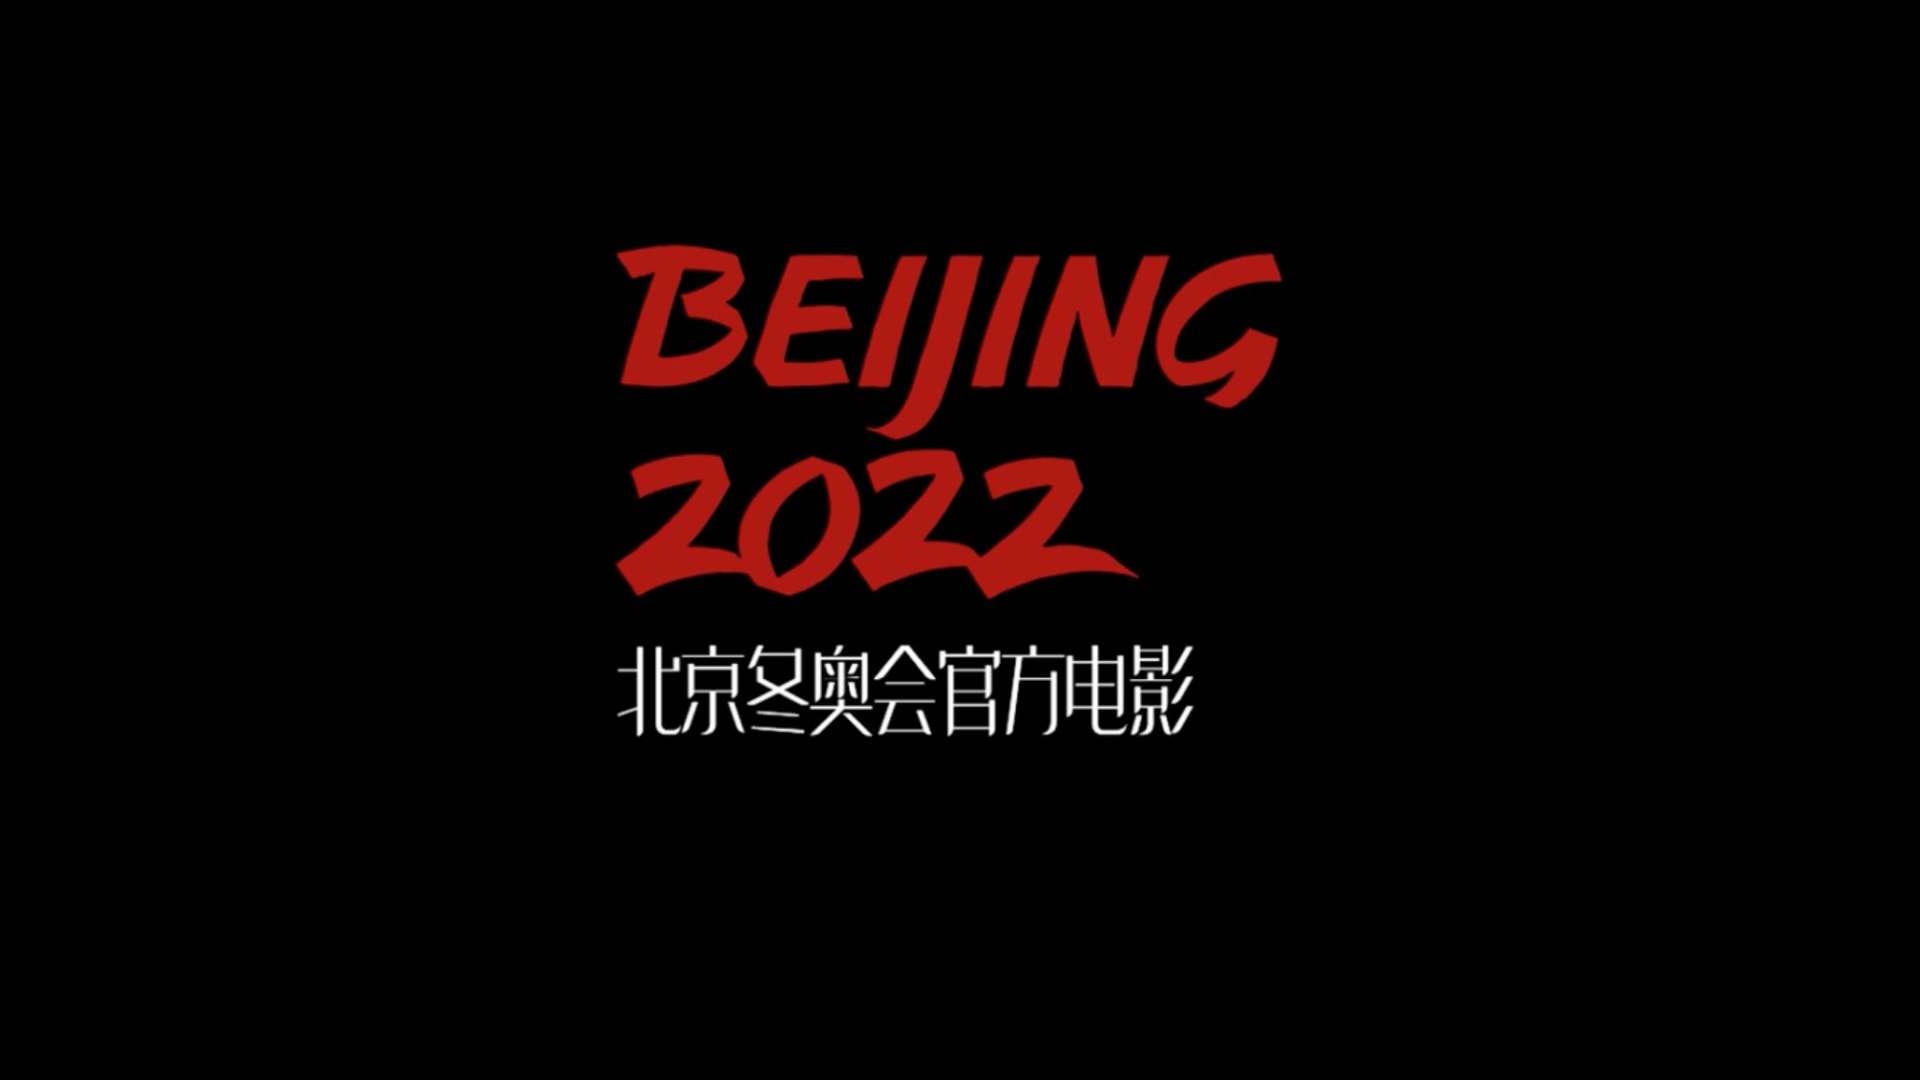 #京冬奥会官方电影《北京2022》